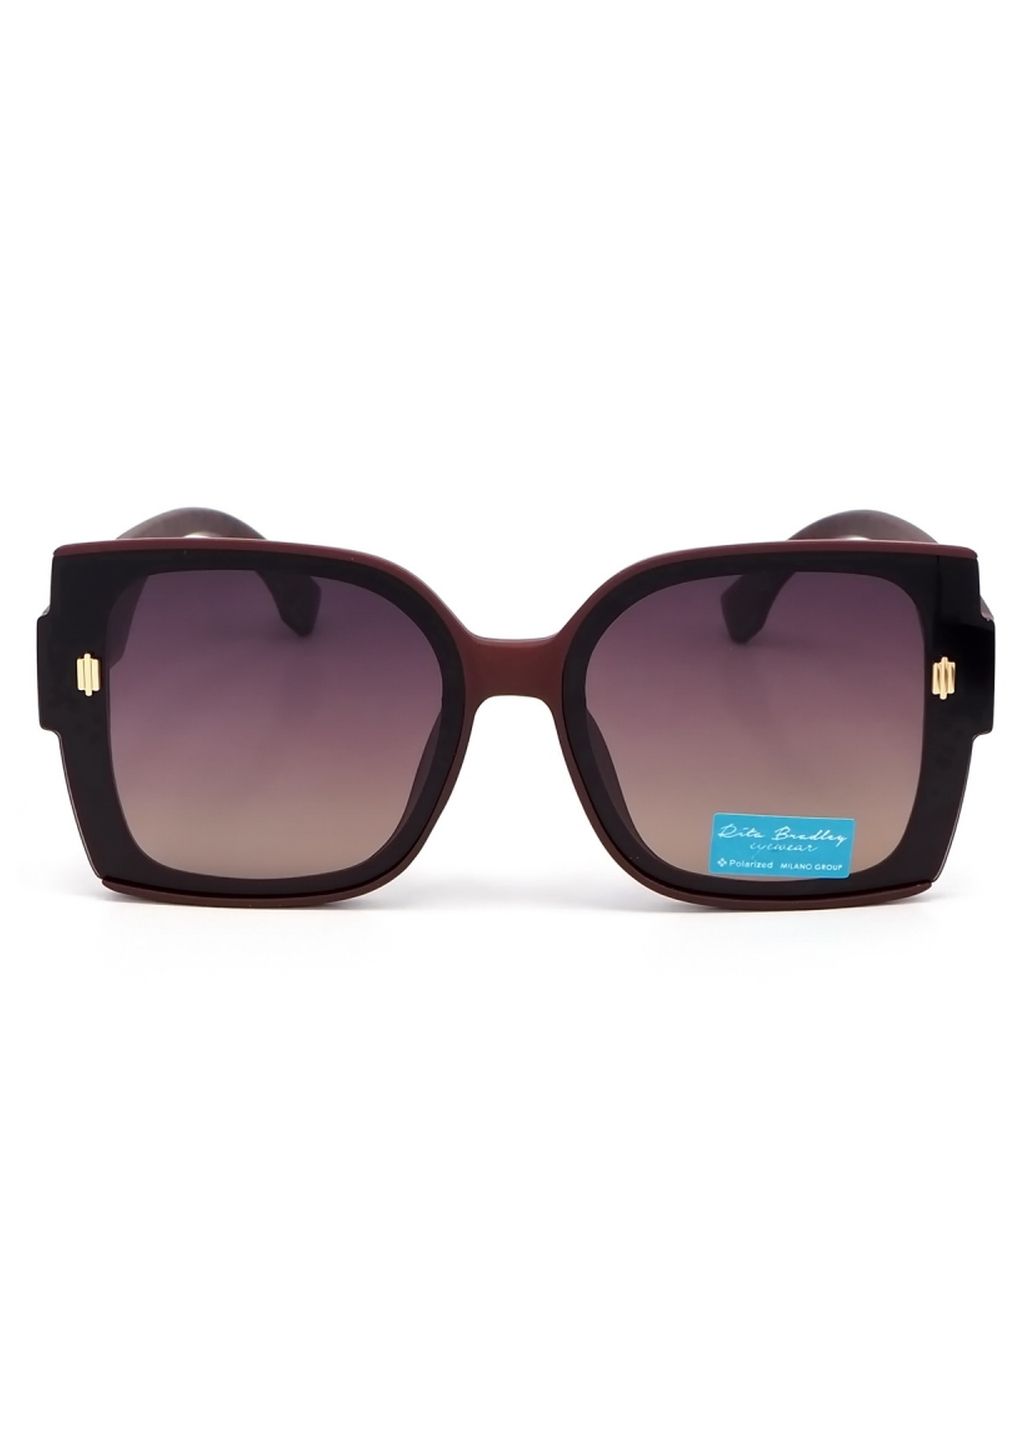 Купить Женские солнцезащитные очки Rita Bradley с поляризацией RB726 112053 в интернет-магазине